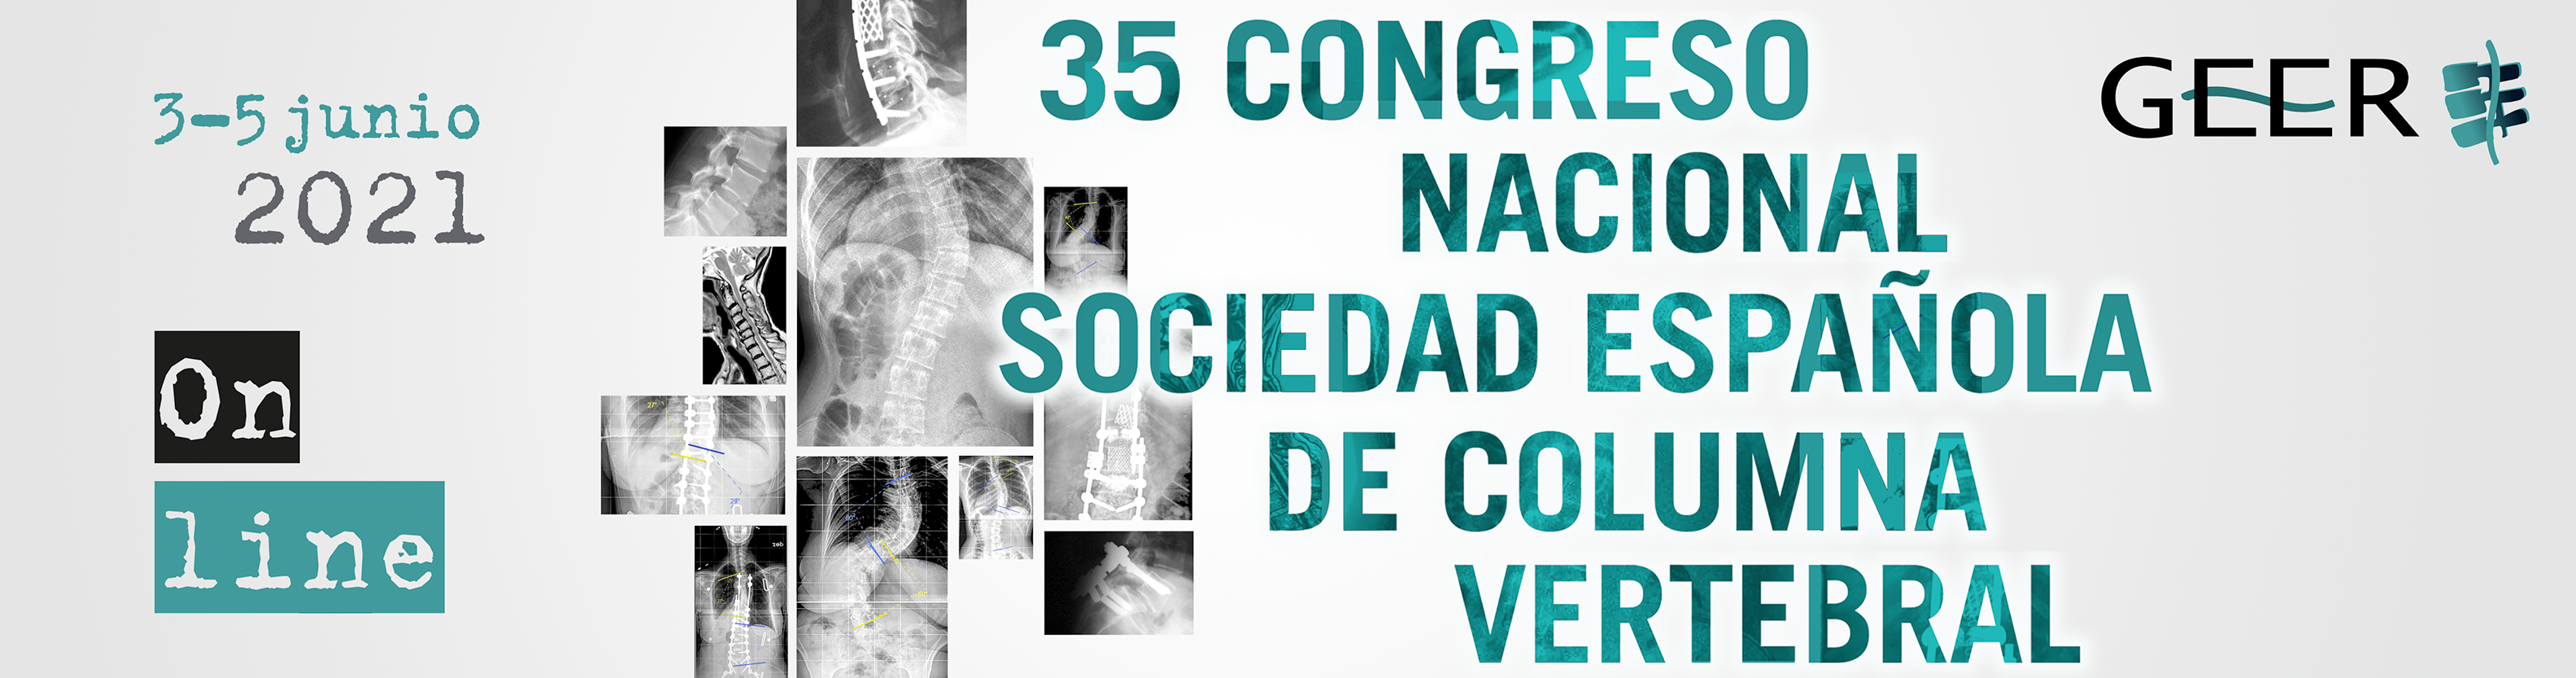 35 Congreso Nacional de la Sociedad Española de Columna Vertebral. <br />
                Online 3, 4 y 5 de junio de 2021